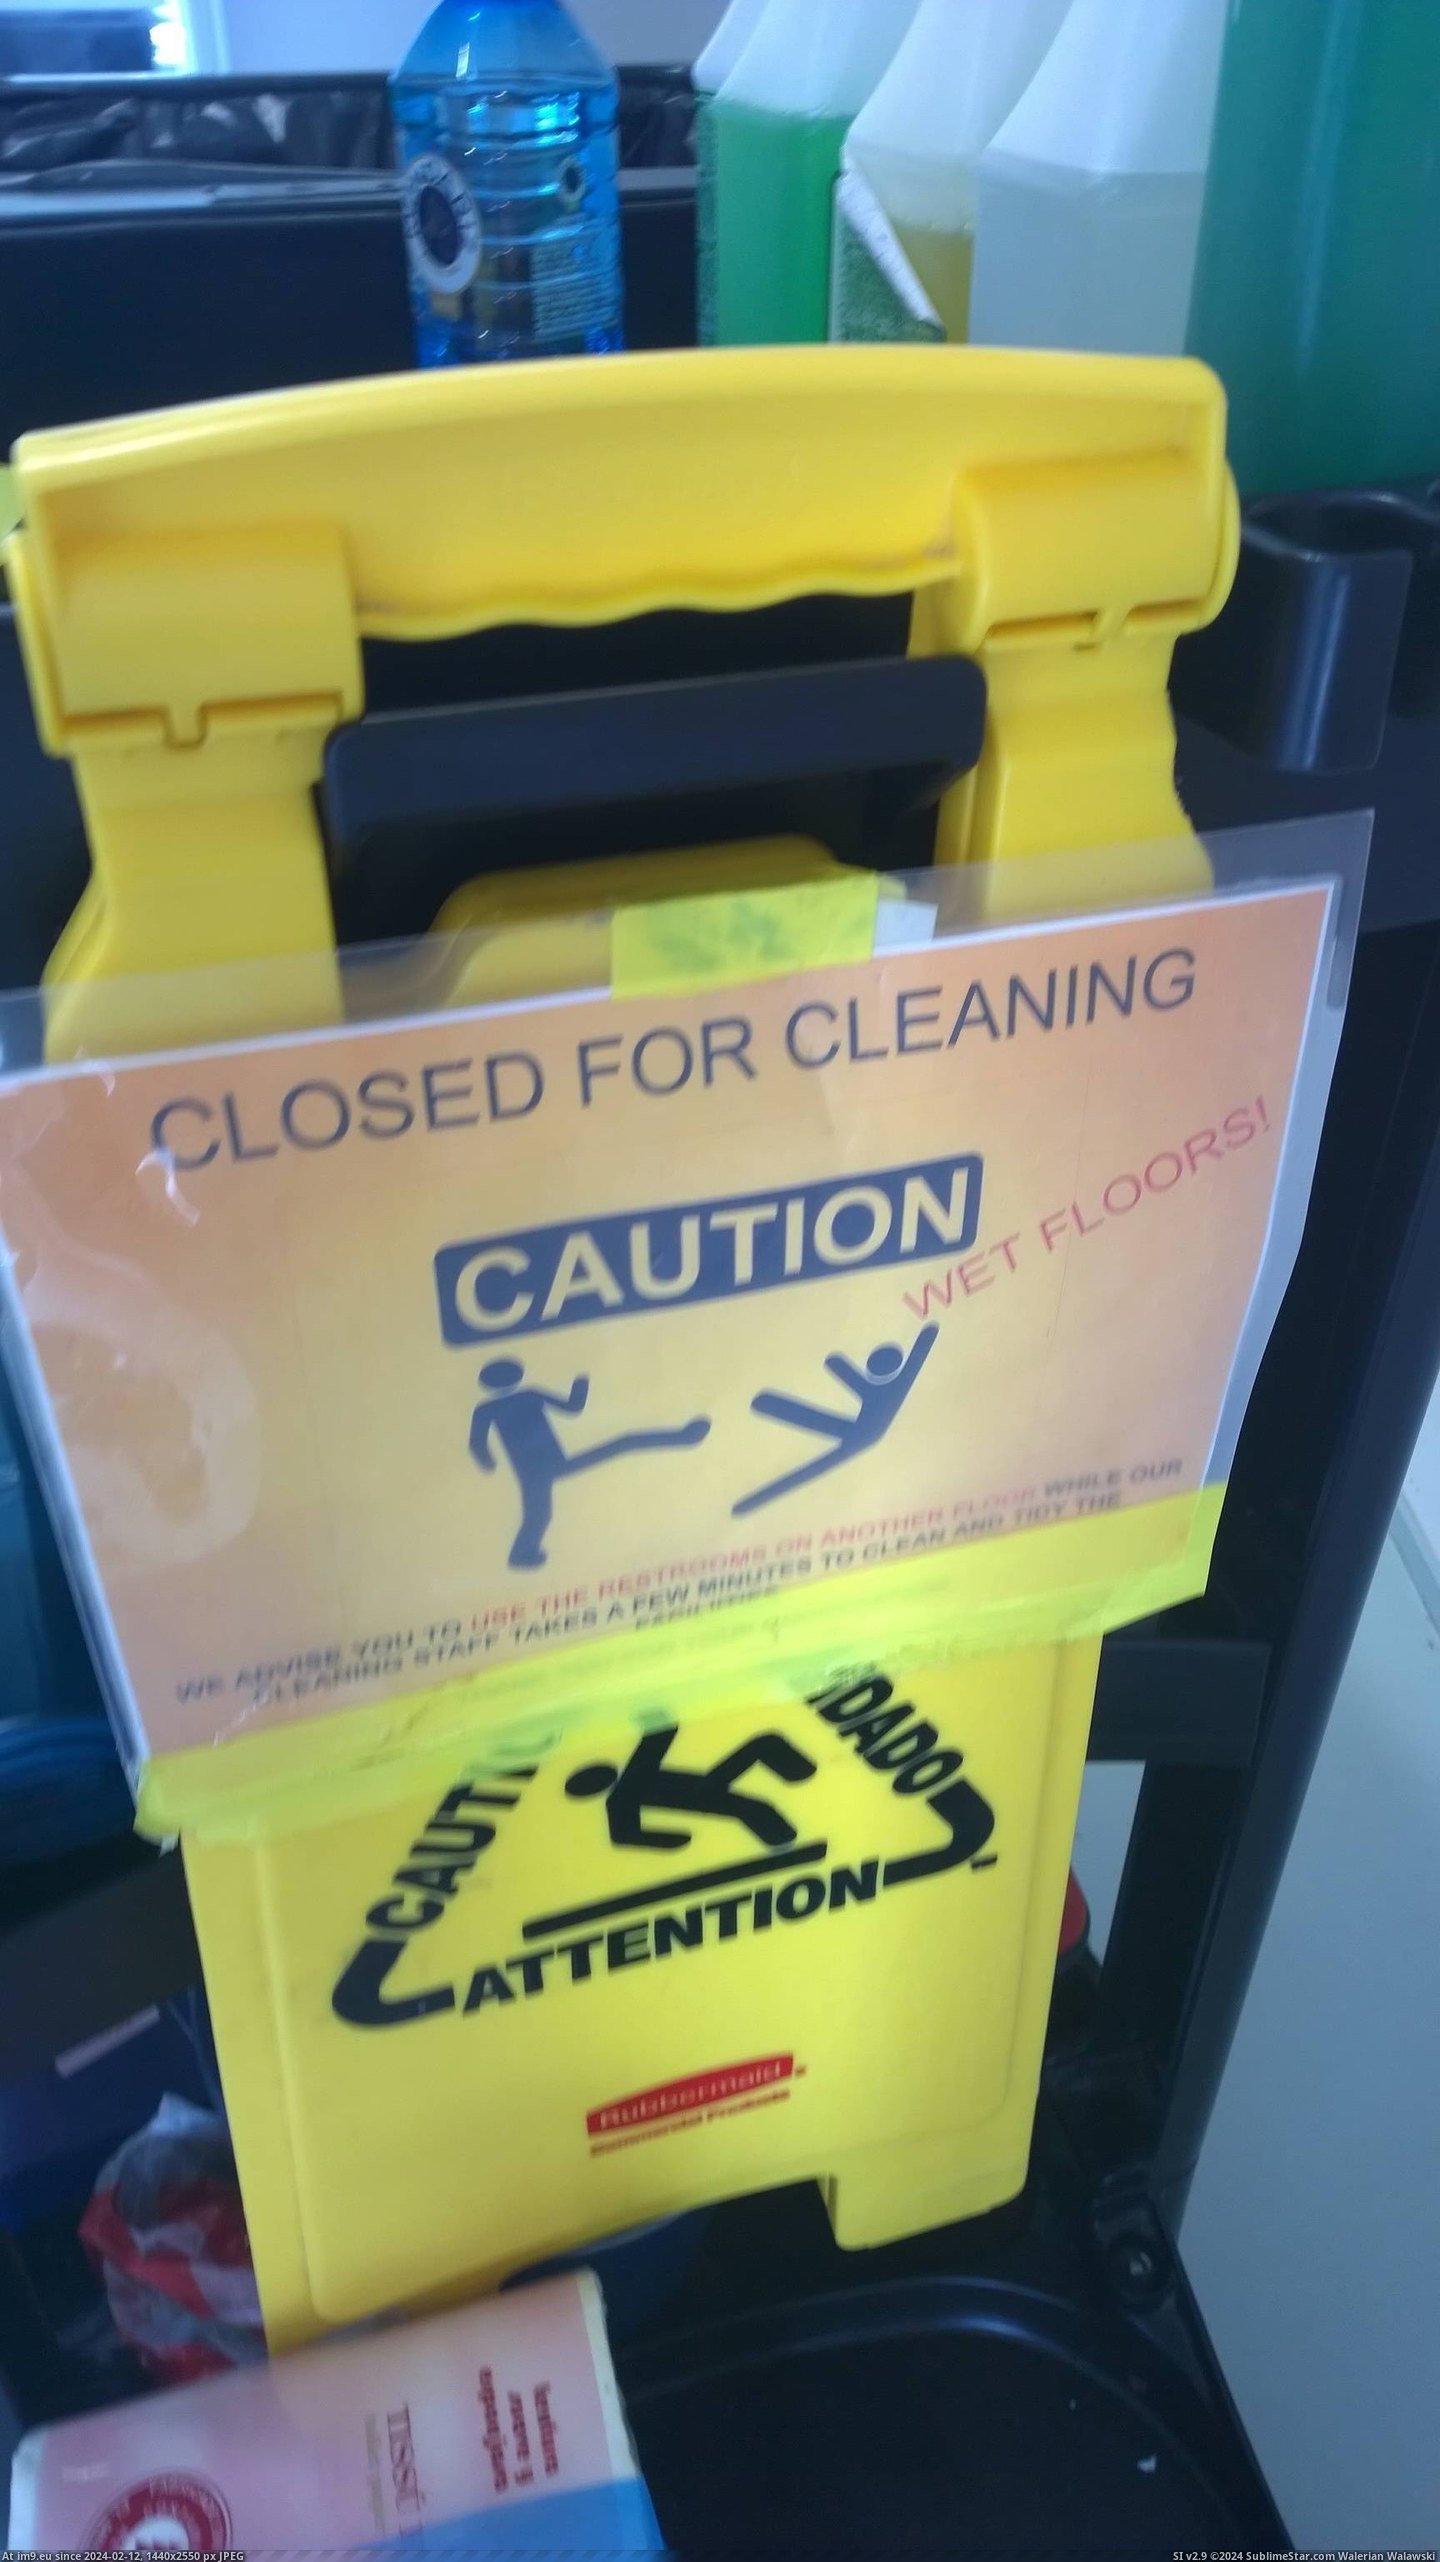 [Mildlyinteresting] Maintenance sign in my school looks like two people fighting and yelling wet floors (in My r/MILDLYINTERESTING favs)